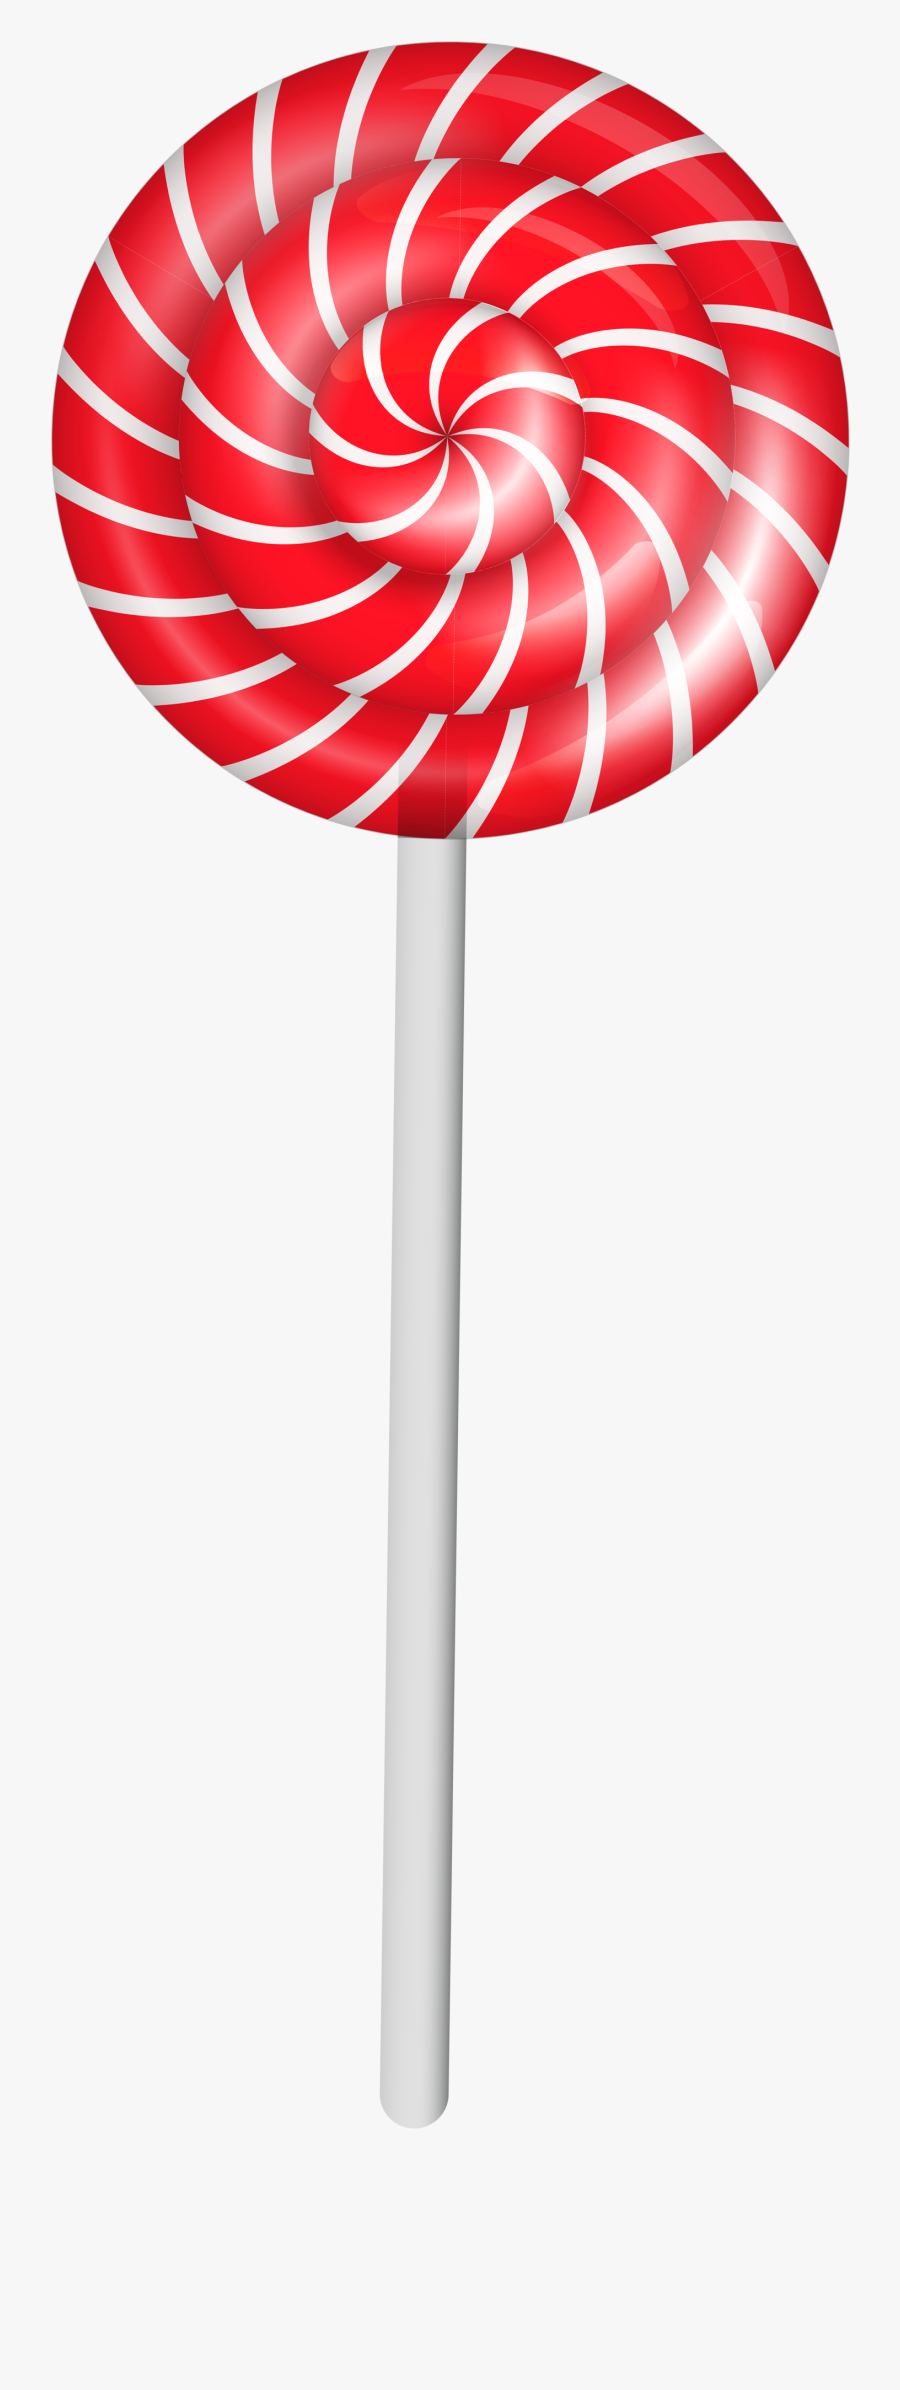 Clip Art Lollipop Clipart Image - Lollipop Stick Transparent Background, Transparent Clipart